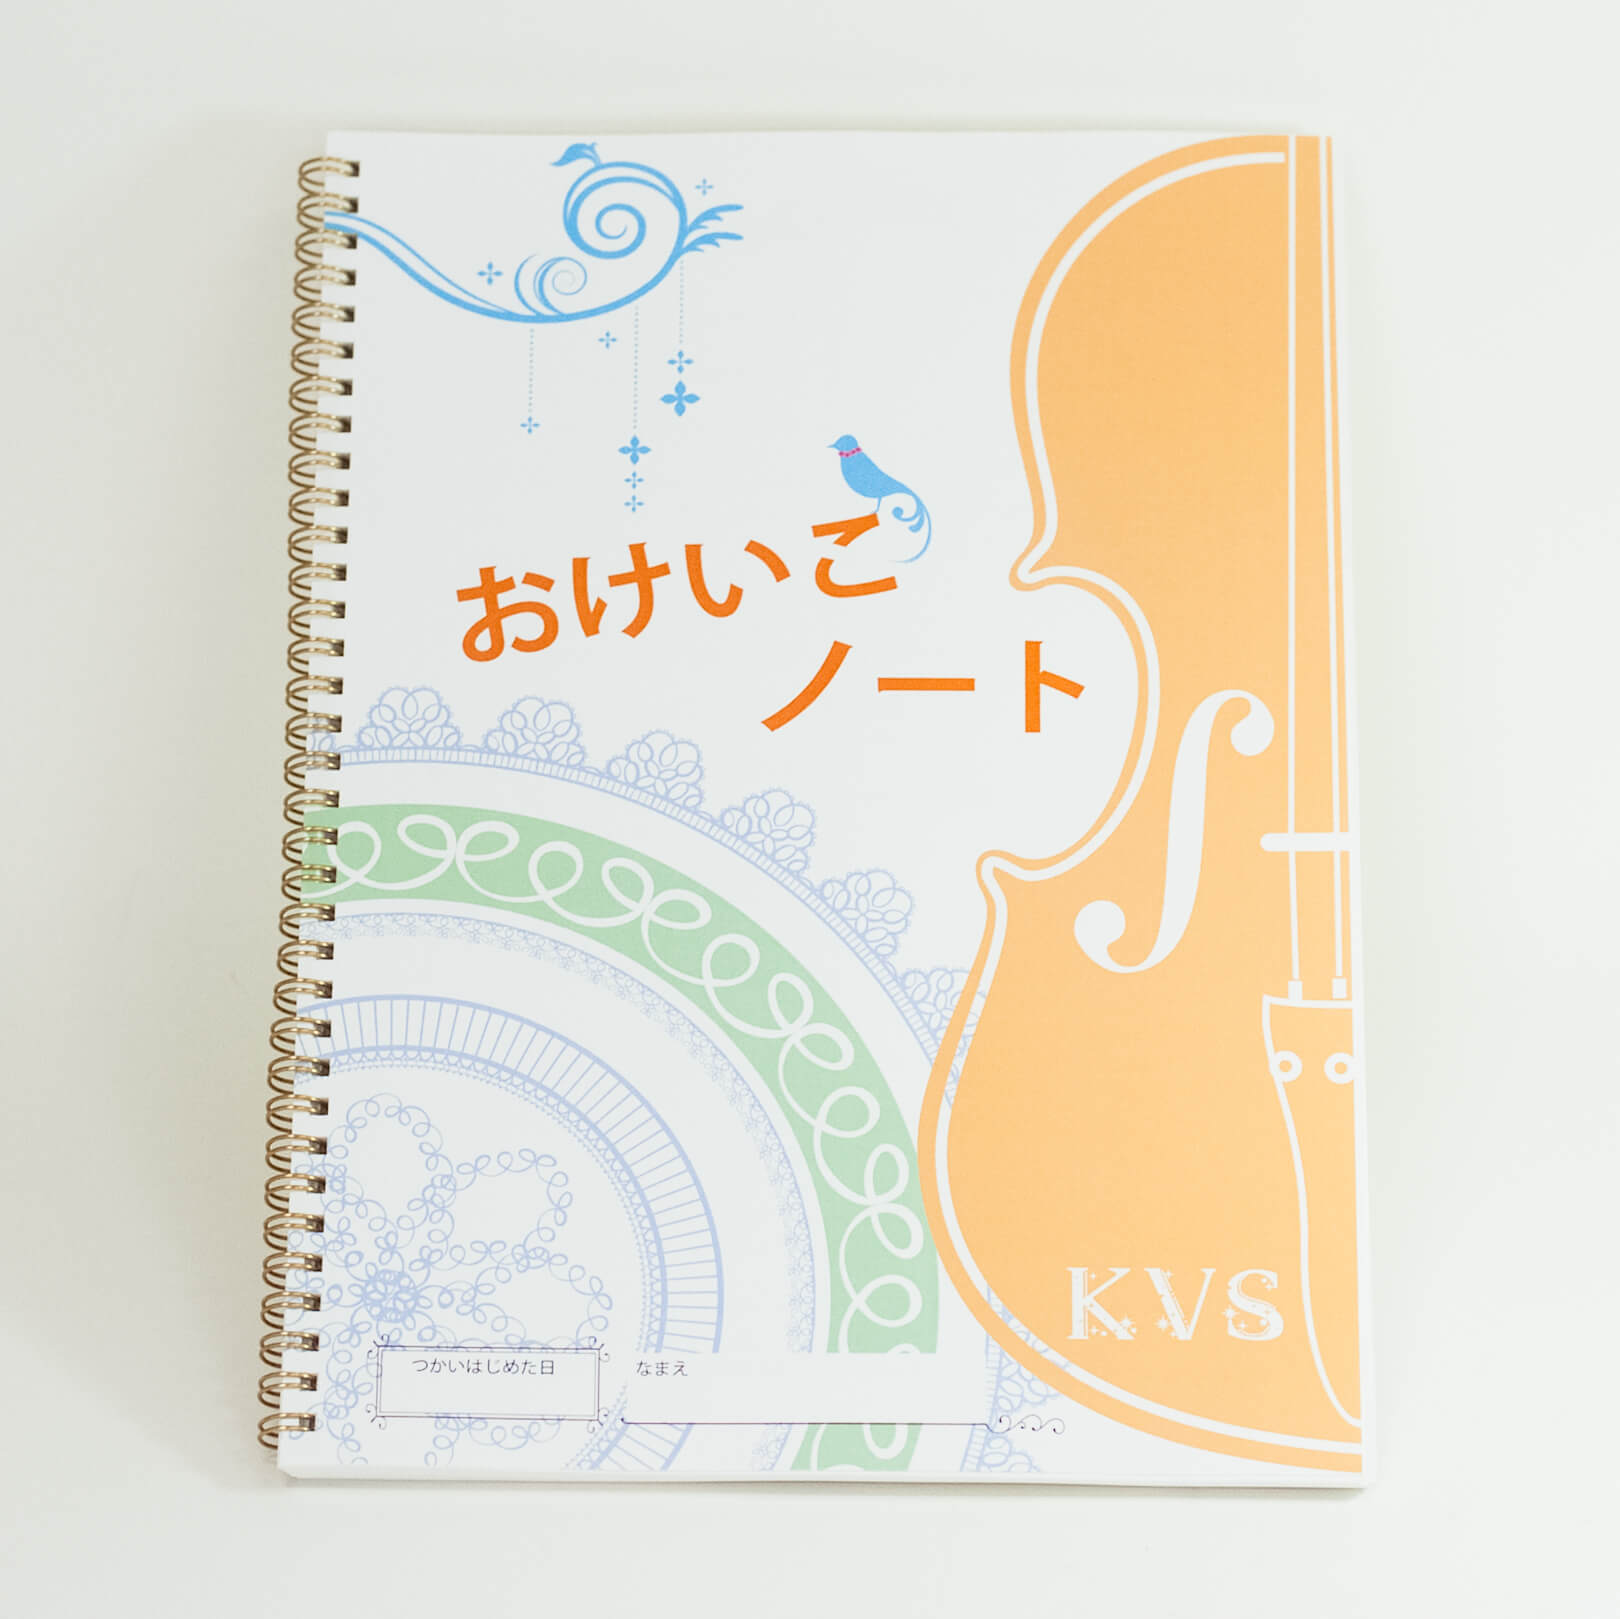 「かみくらヴァイオリンスクール 様」製作のリング製本冊子